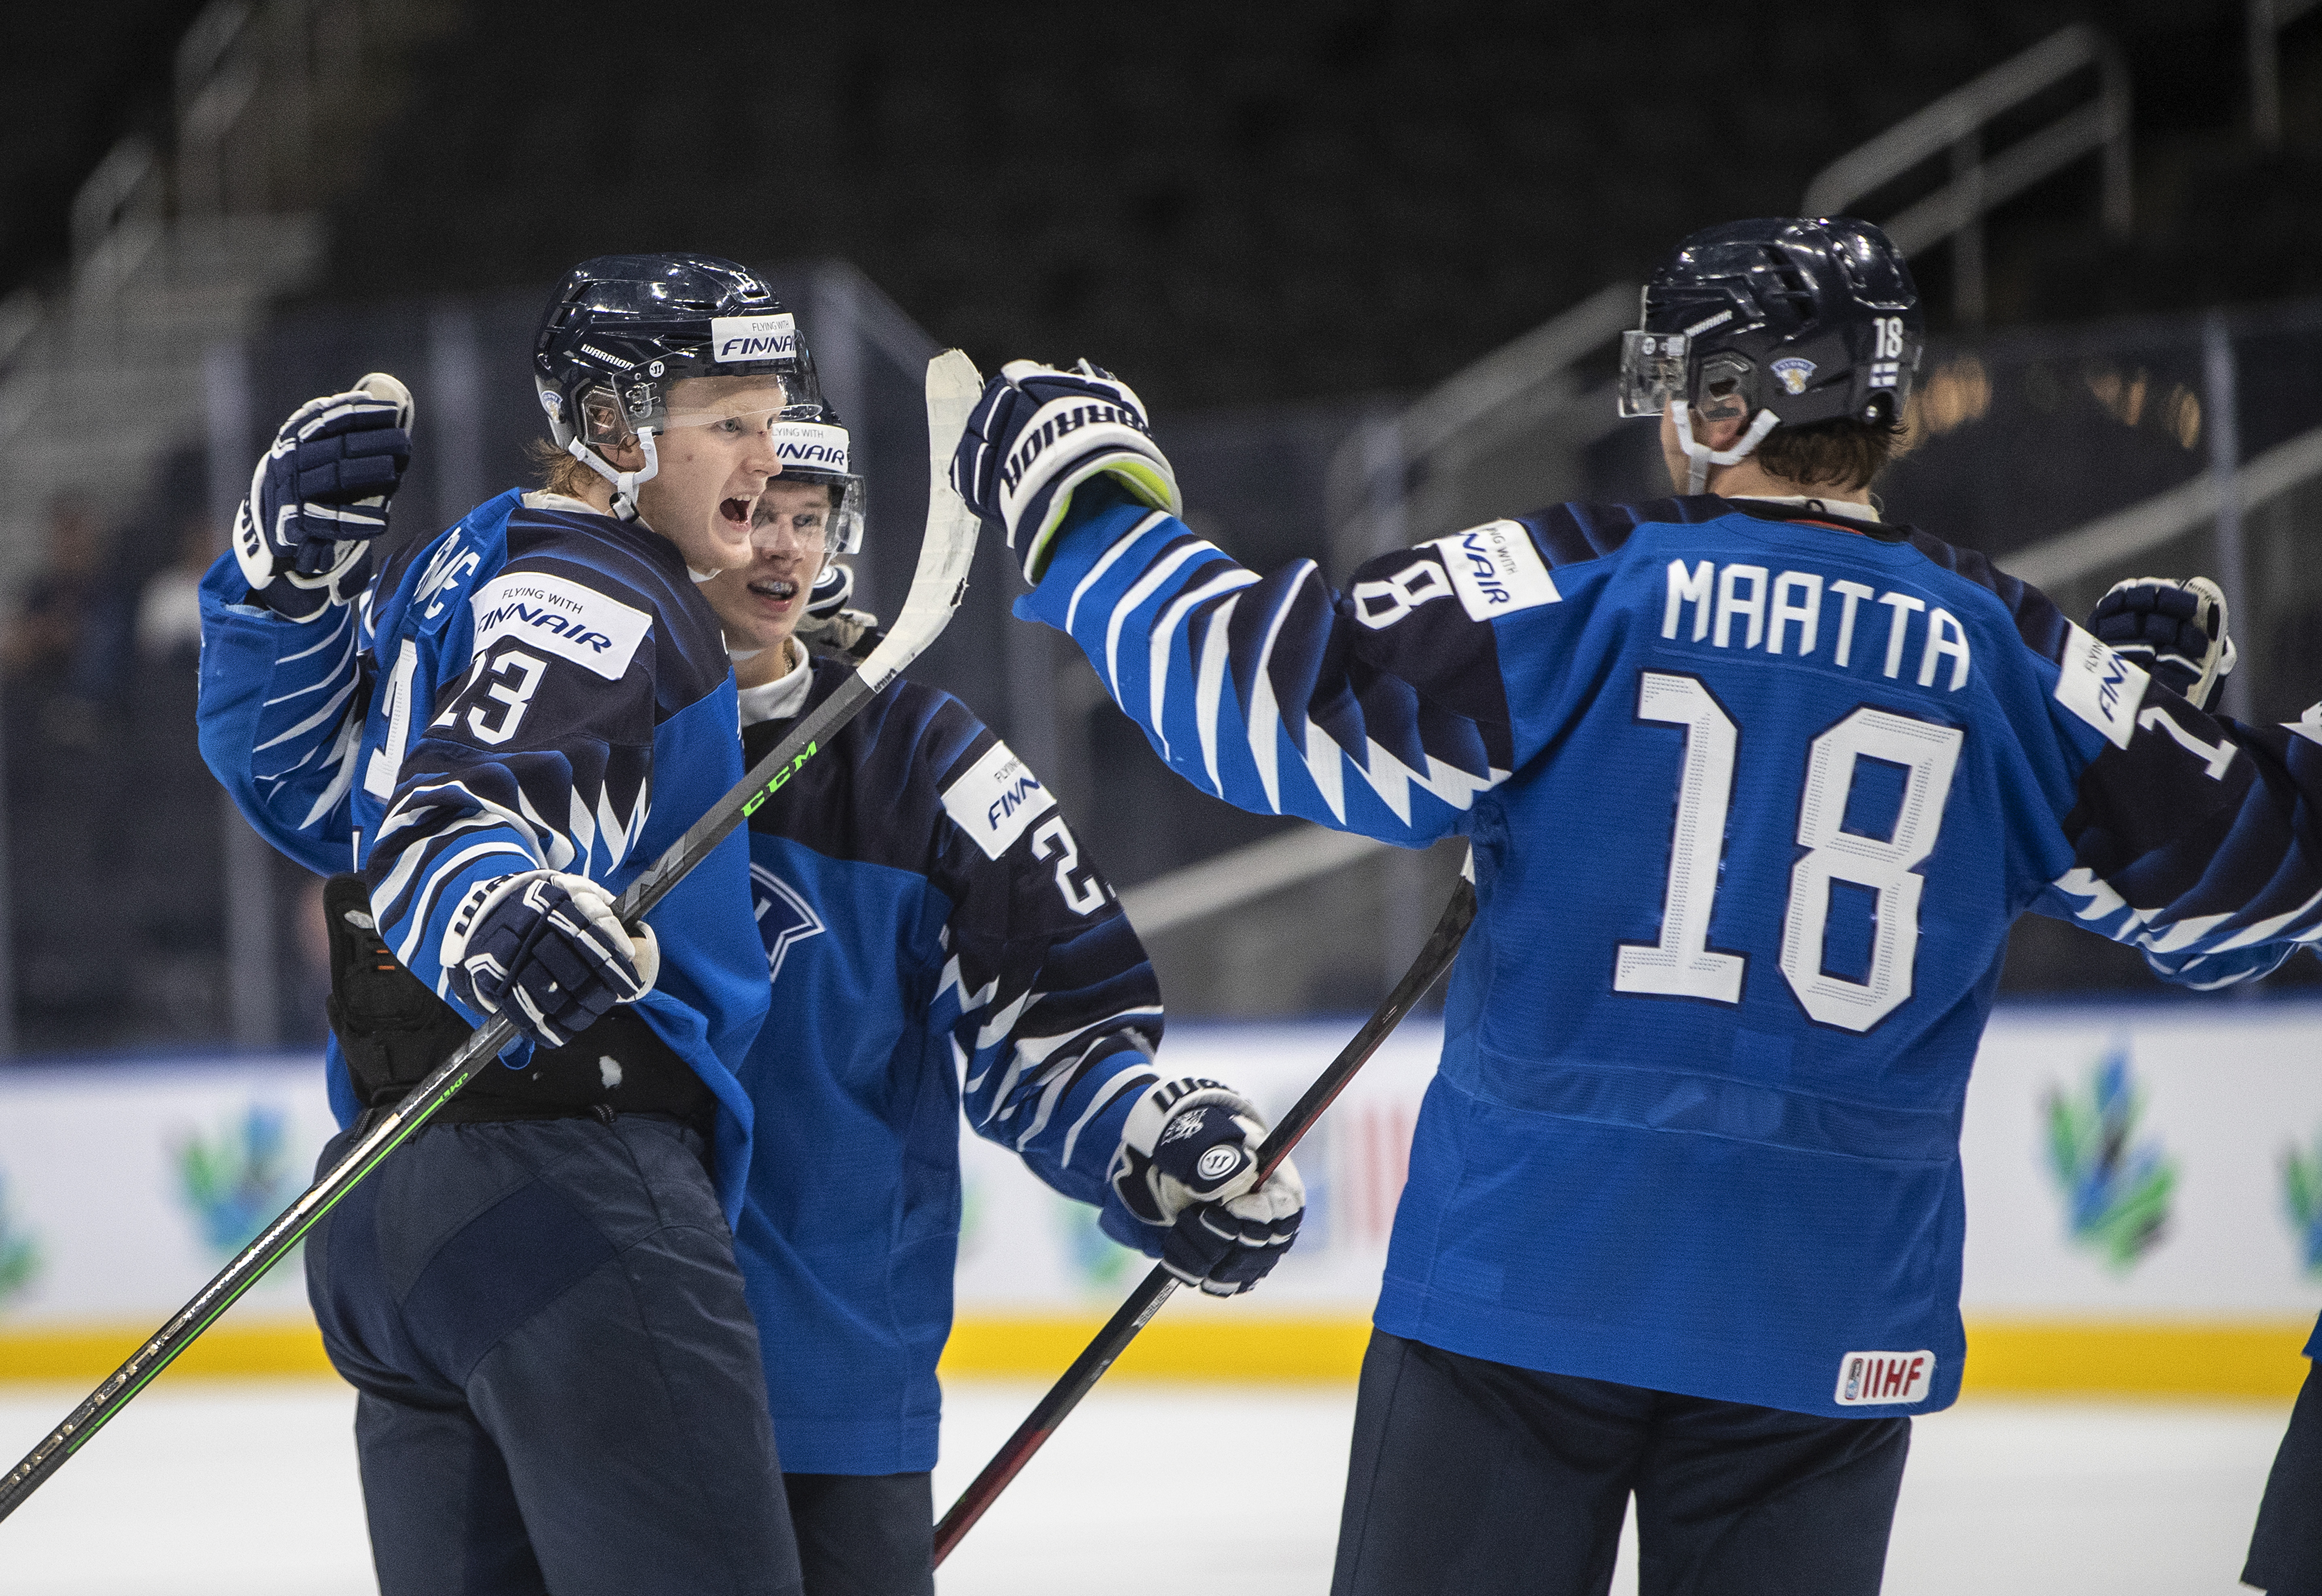 Sweden, Finland advance to world junior hockey semifinals in Edmonton